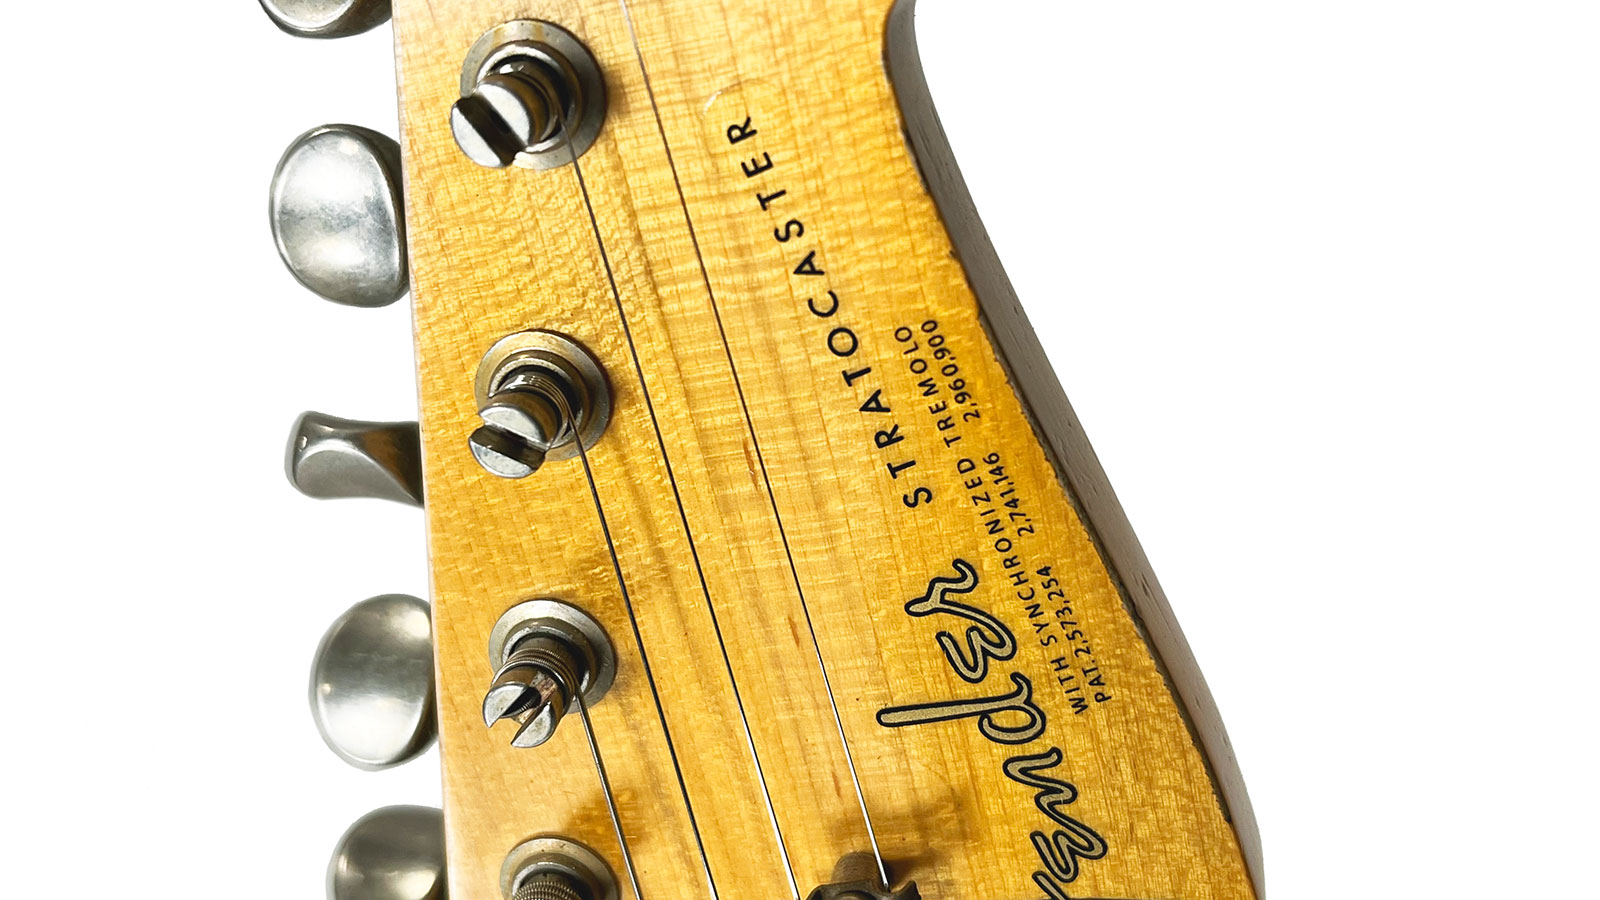 Fender Custom Shop Strat 1963 3s Trem Rw #r117571 - Relic Fiesta Red - Elektrische gitaar in Str-vorm - Variation 5